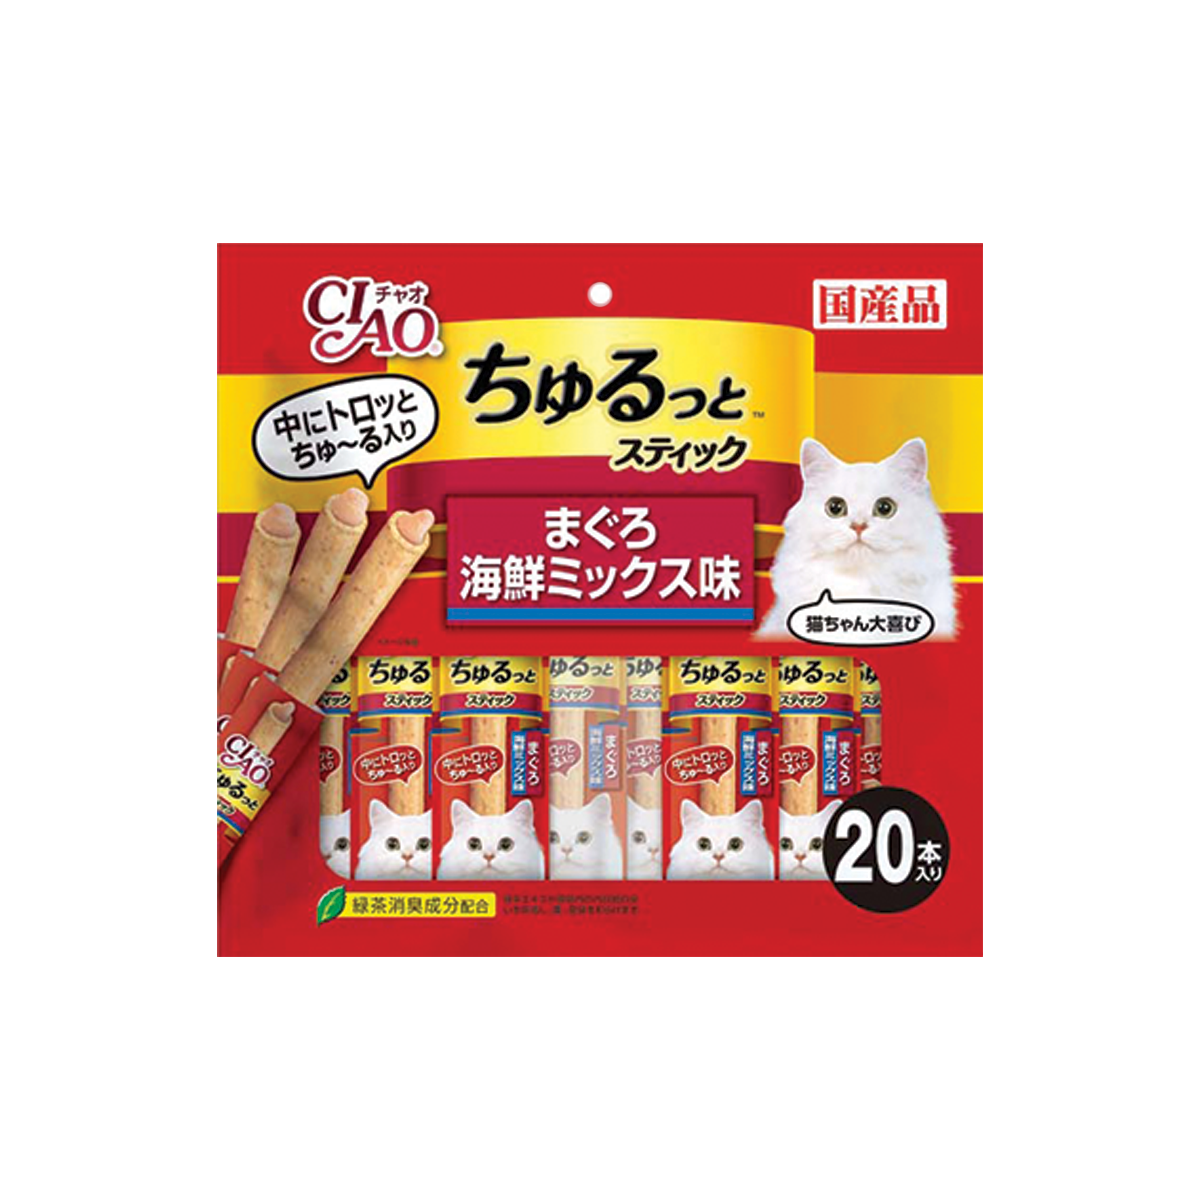 CIAO Churutto Stick Maguro with Scallop Formula Flavor เชาว์ ชูหรุโตะ สติก สูตรมากุโระกับหอยเชลล์ ขนาด 28 กรัม (20 ชิ้น)